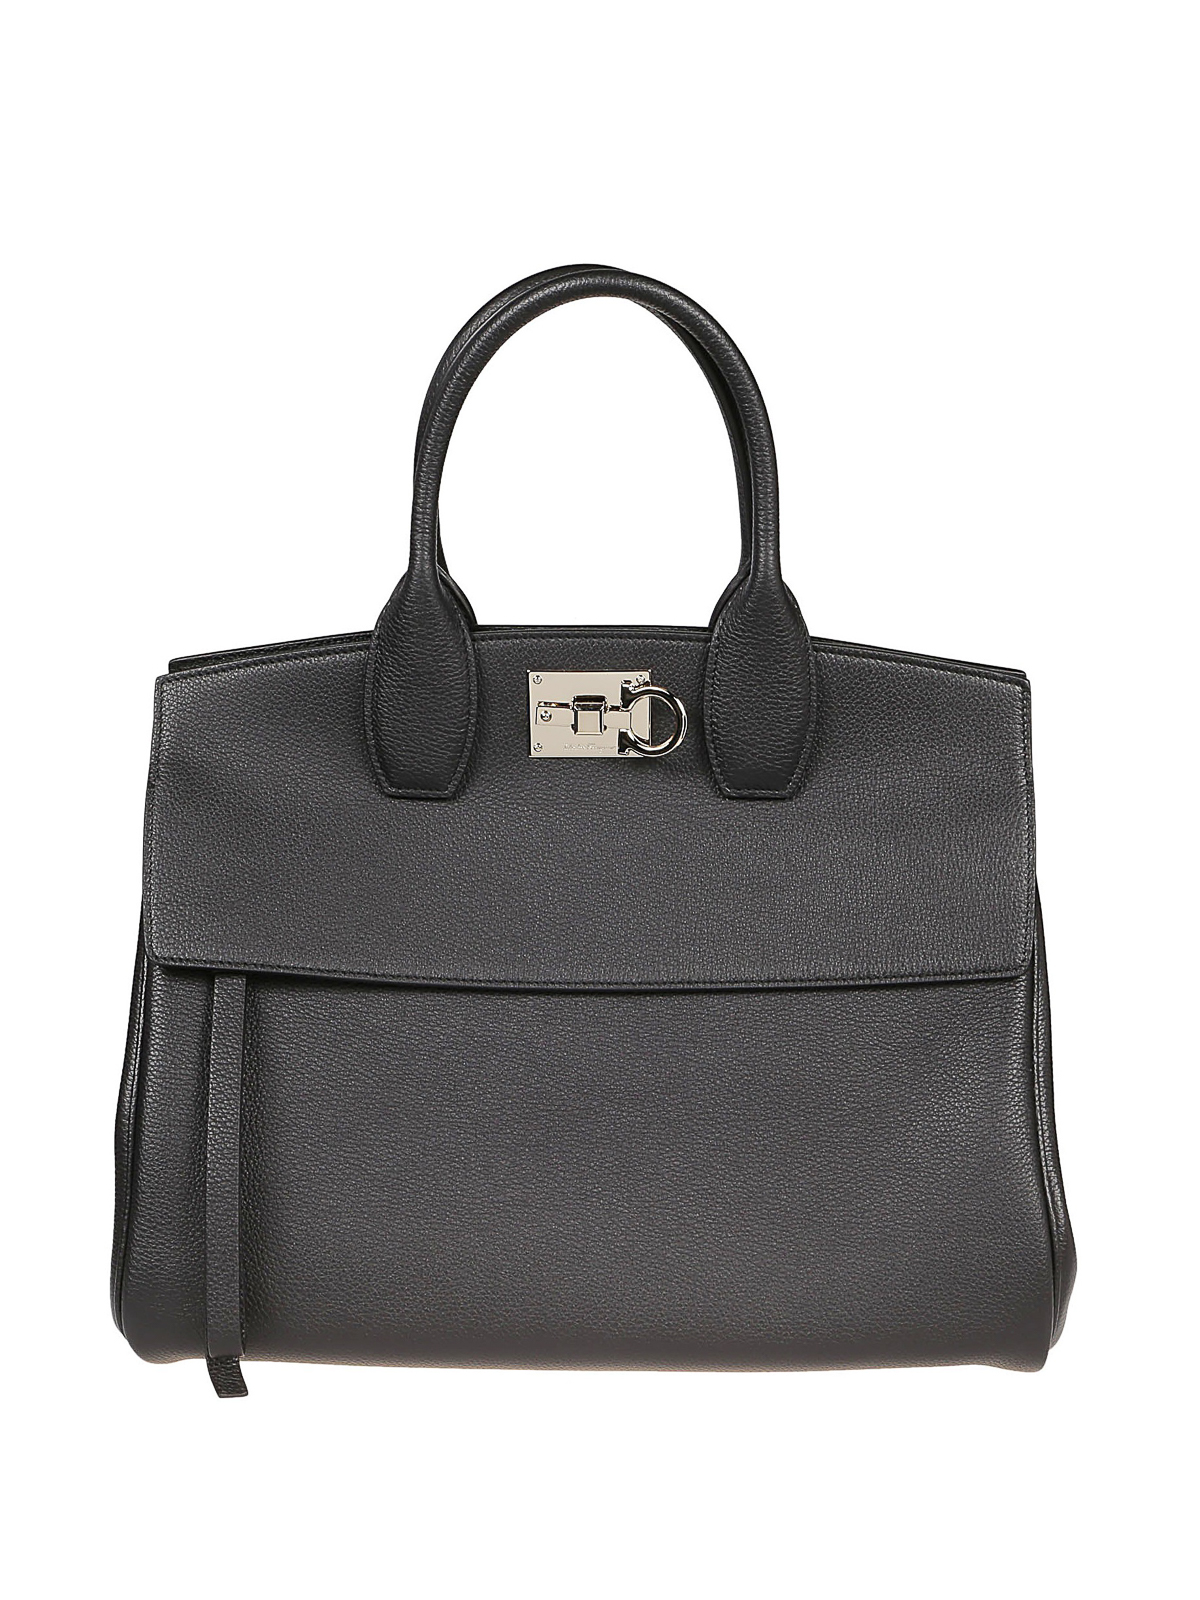 Totes bags Salvatore Ferragamo - Black leather Studio bag 